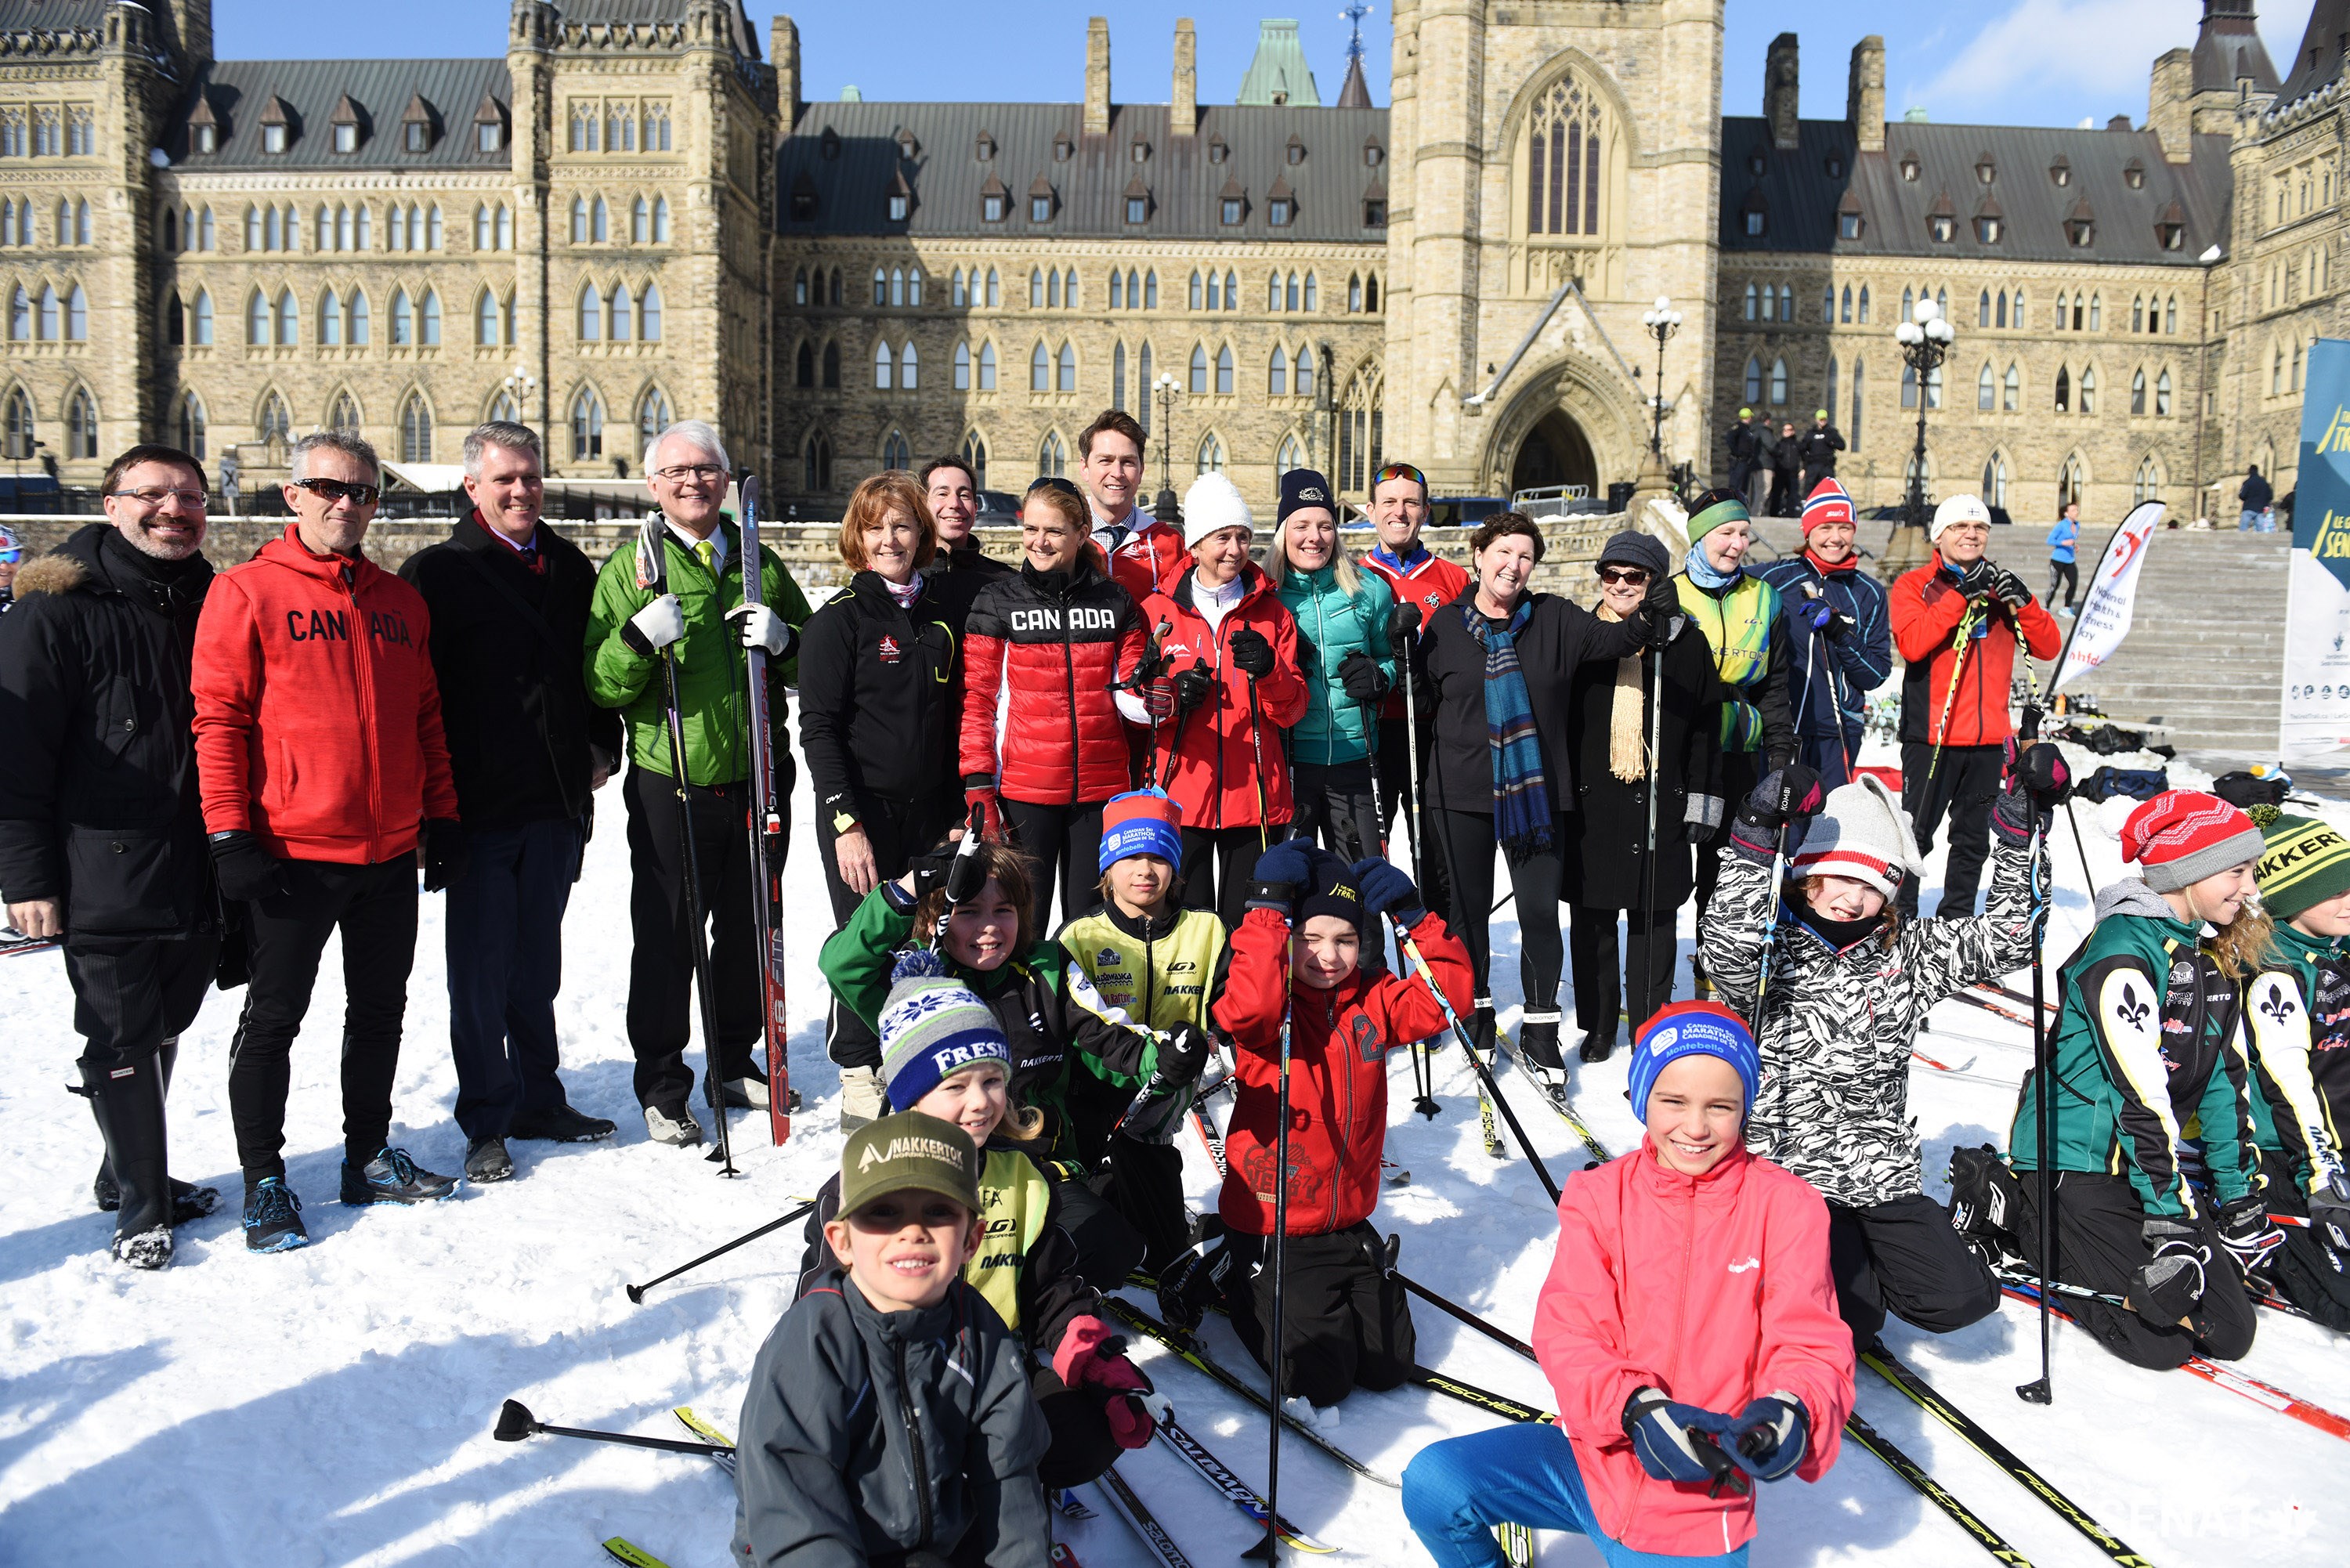 La gouverneure générale et des parlementaires en compagnie d'un groupe de jeunes skieurs enthousiastes prennent la pose. Quoi de plus plaisant qu'une journée de ski sur la Colline!